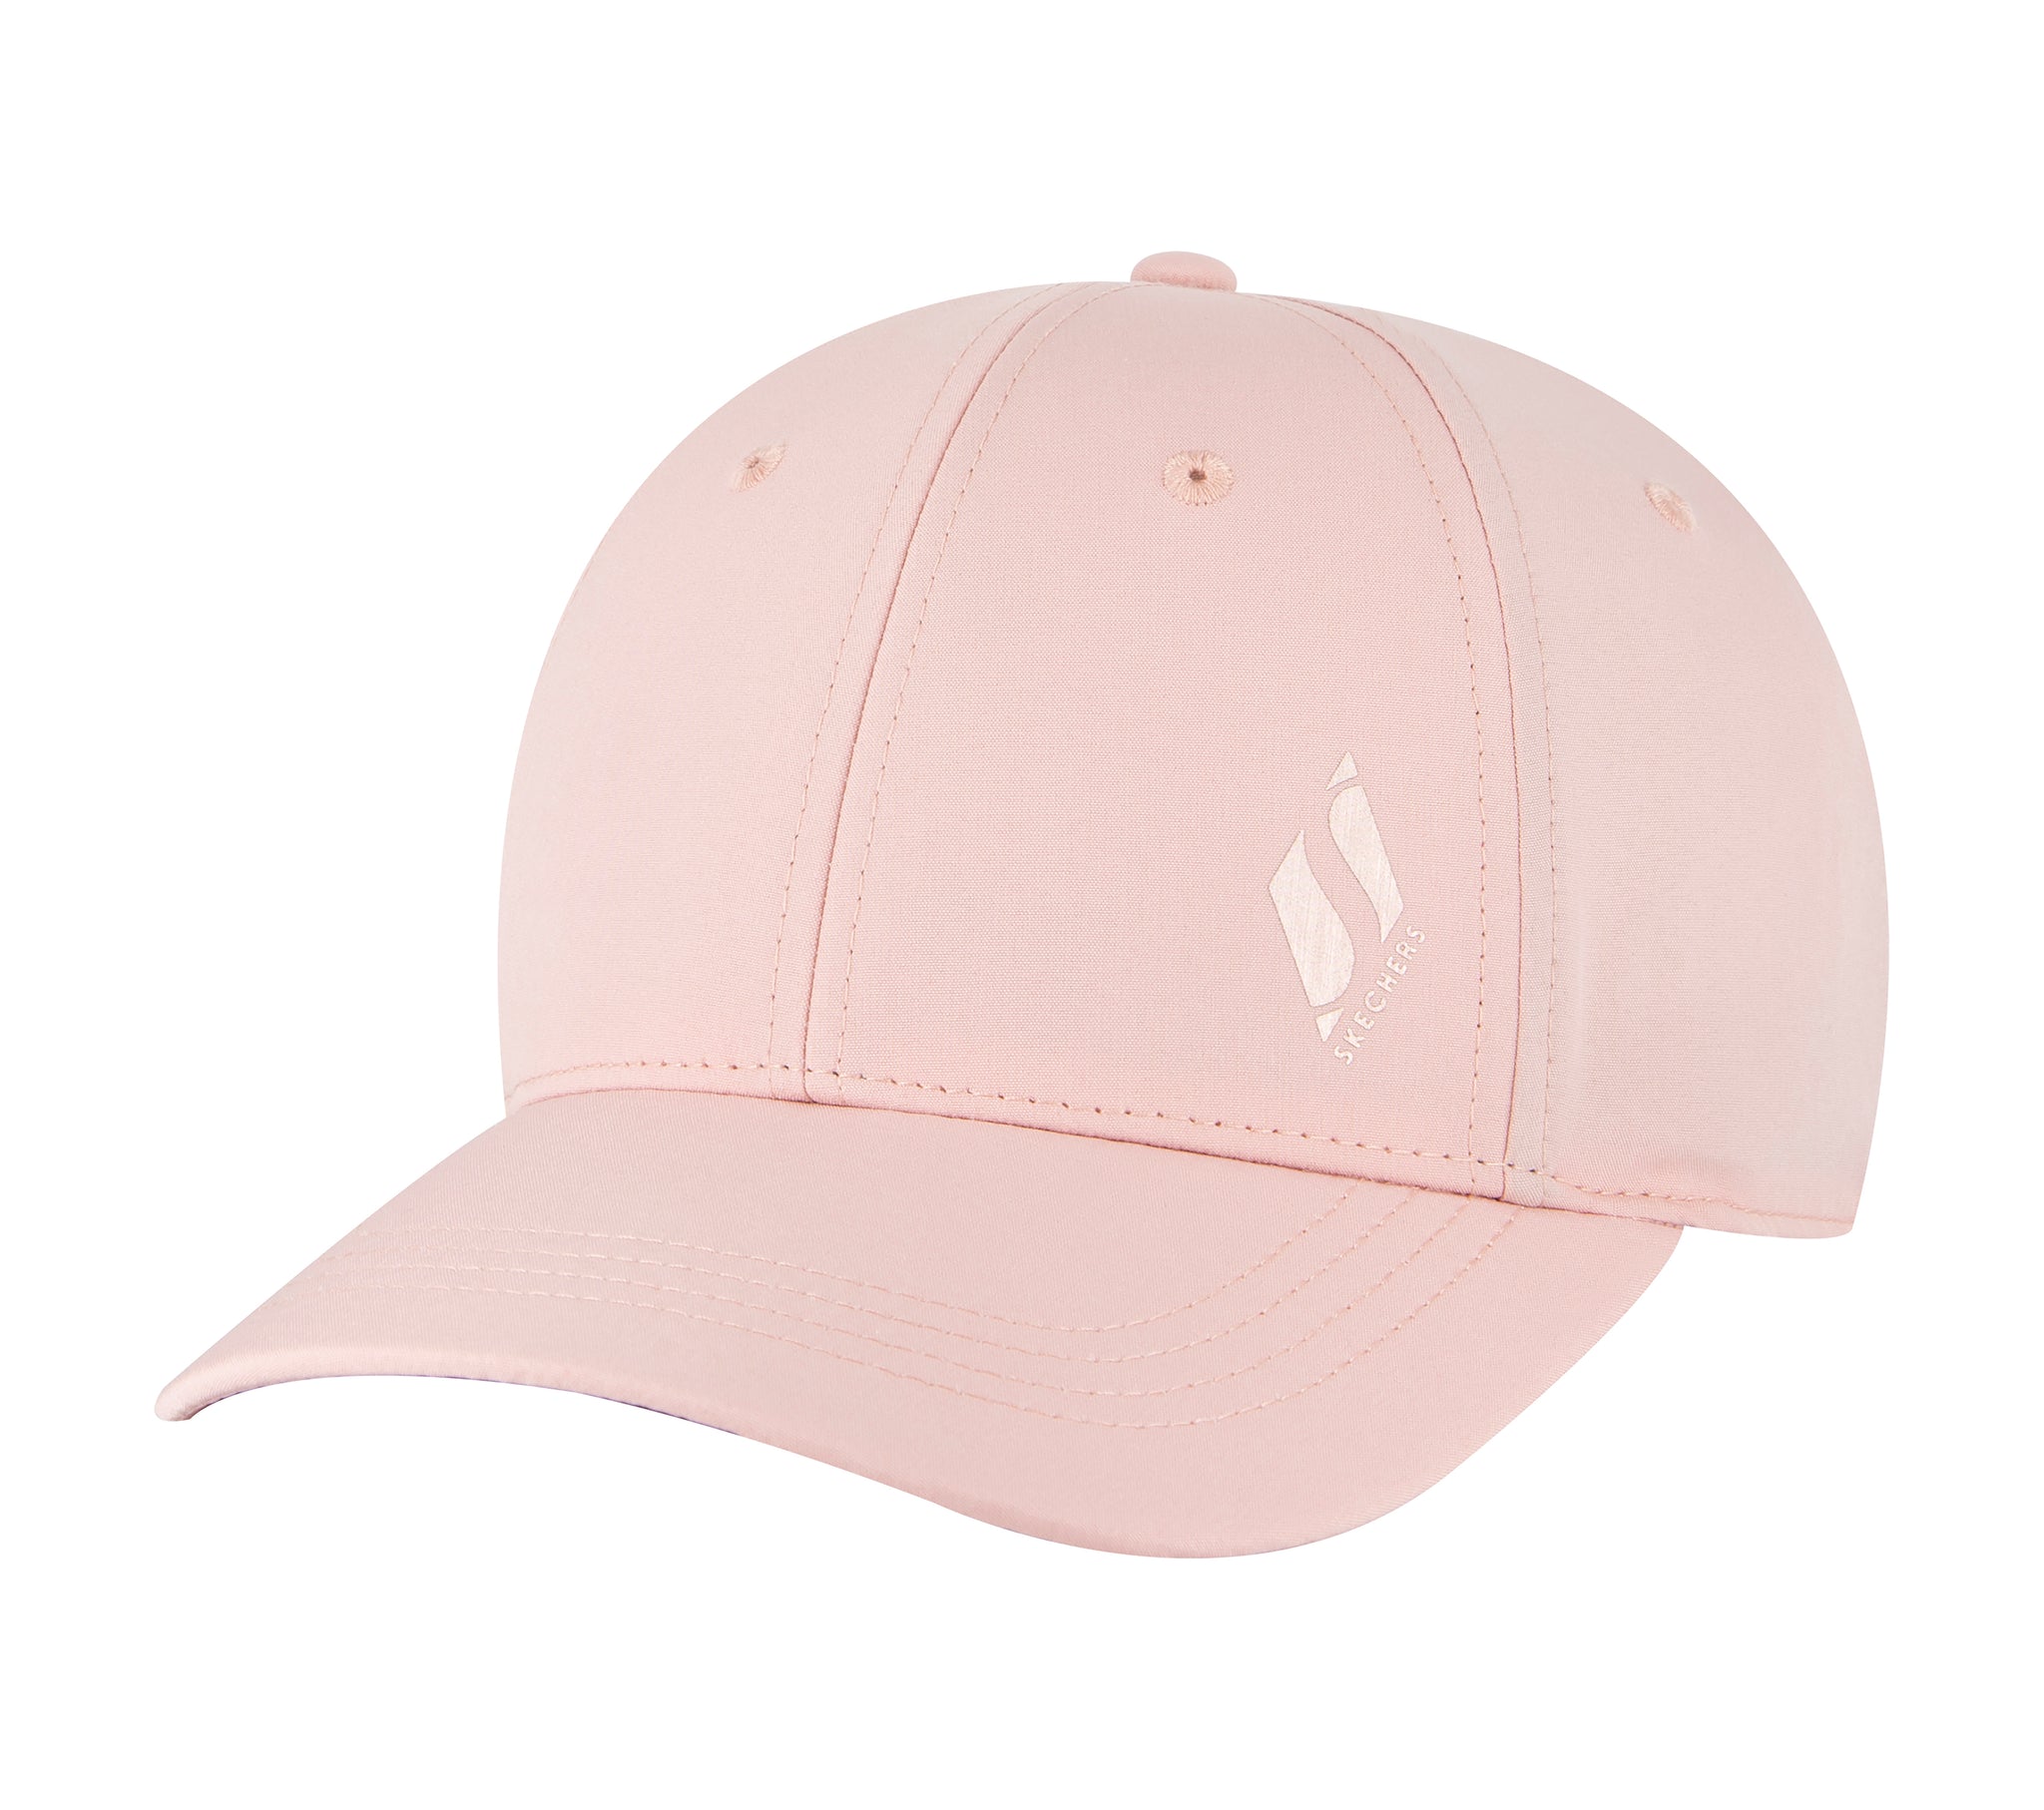 SKBB5032 - SKECH-SHINE ROSE GOLD DIAMOND HAT